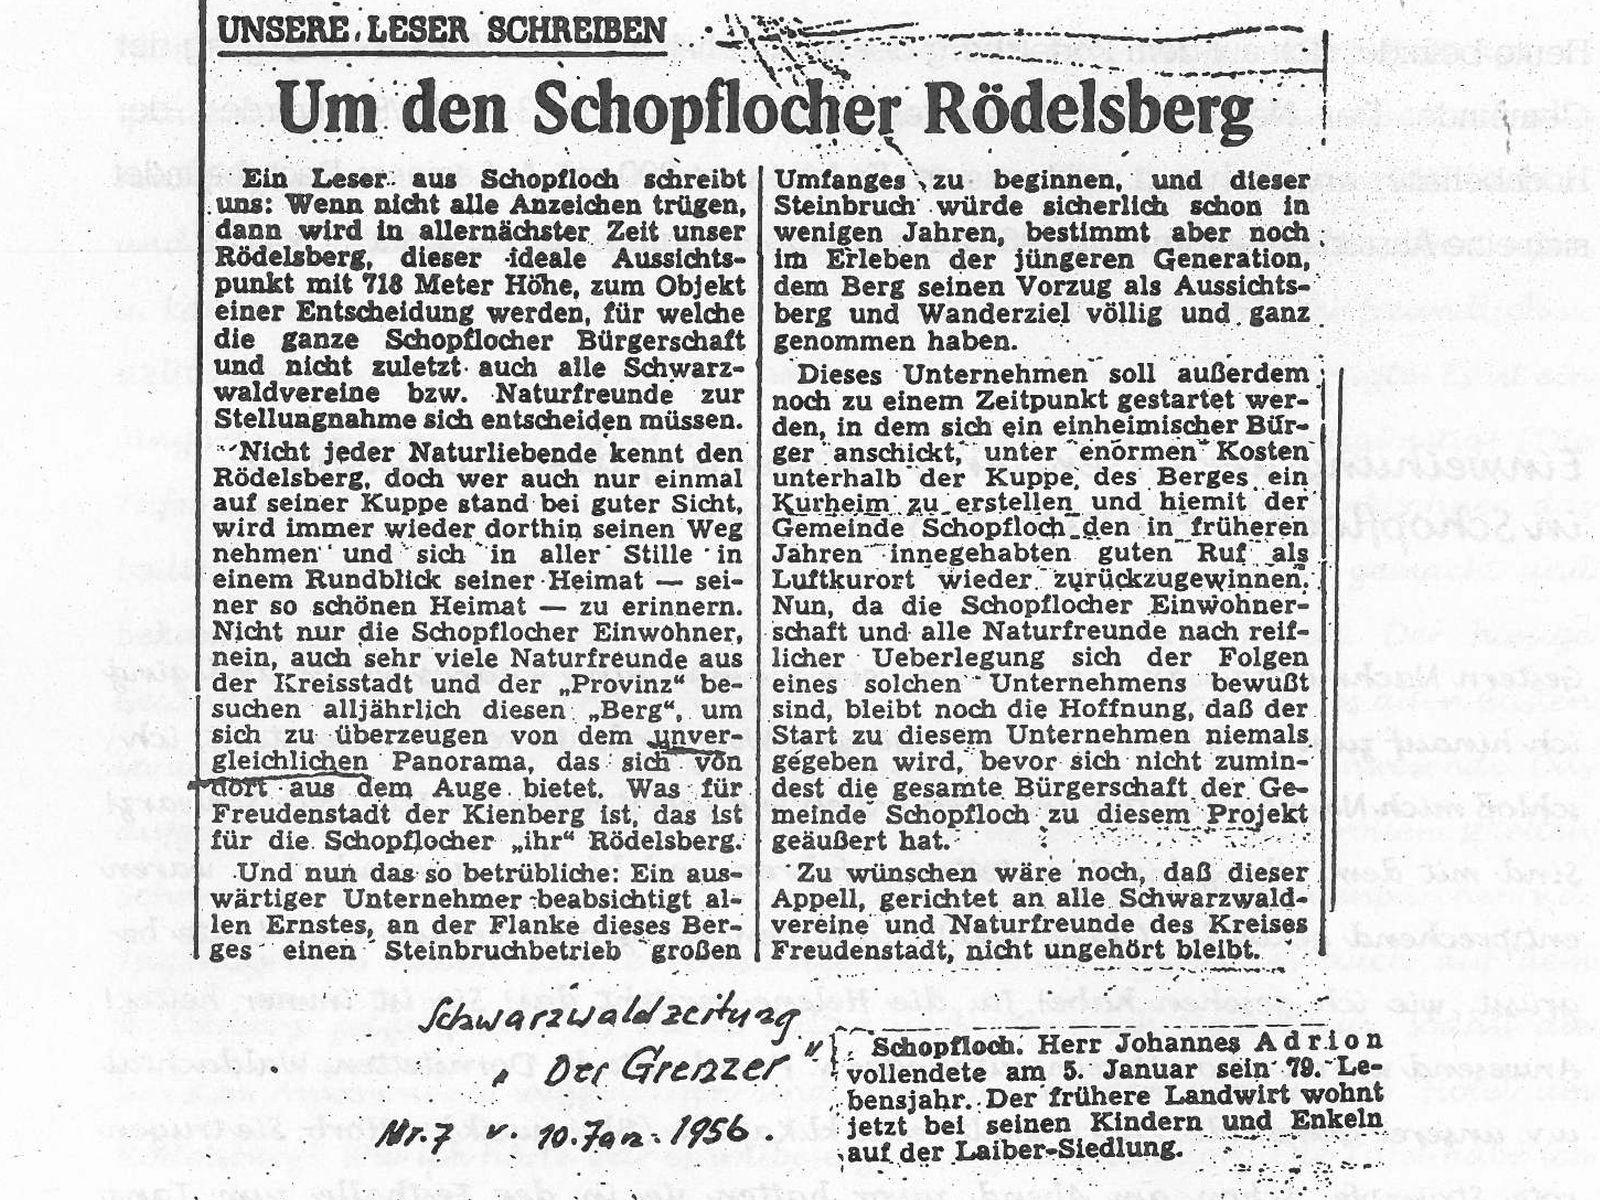  Schopflocher Skizzen Zeitungsartikel „Um den Schopflocher Rödelsberg“ - Bild wird mit einem klick vergrößert 